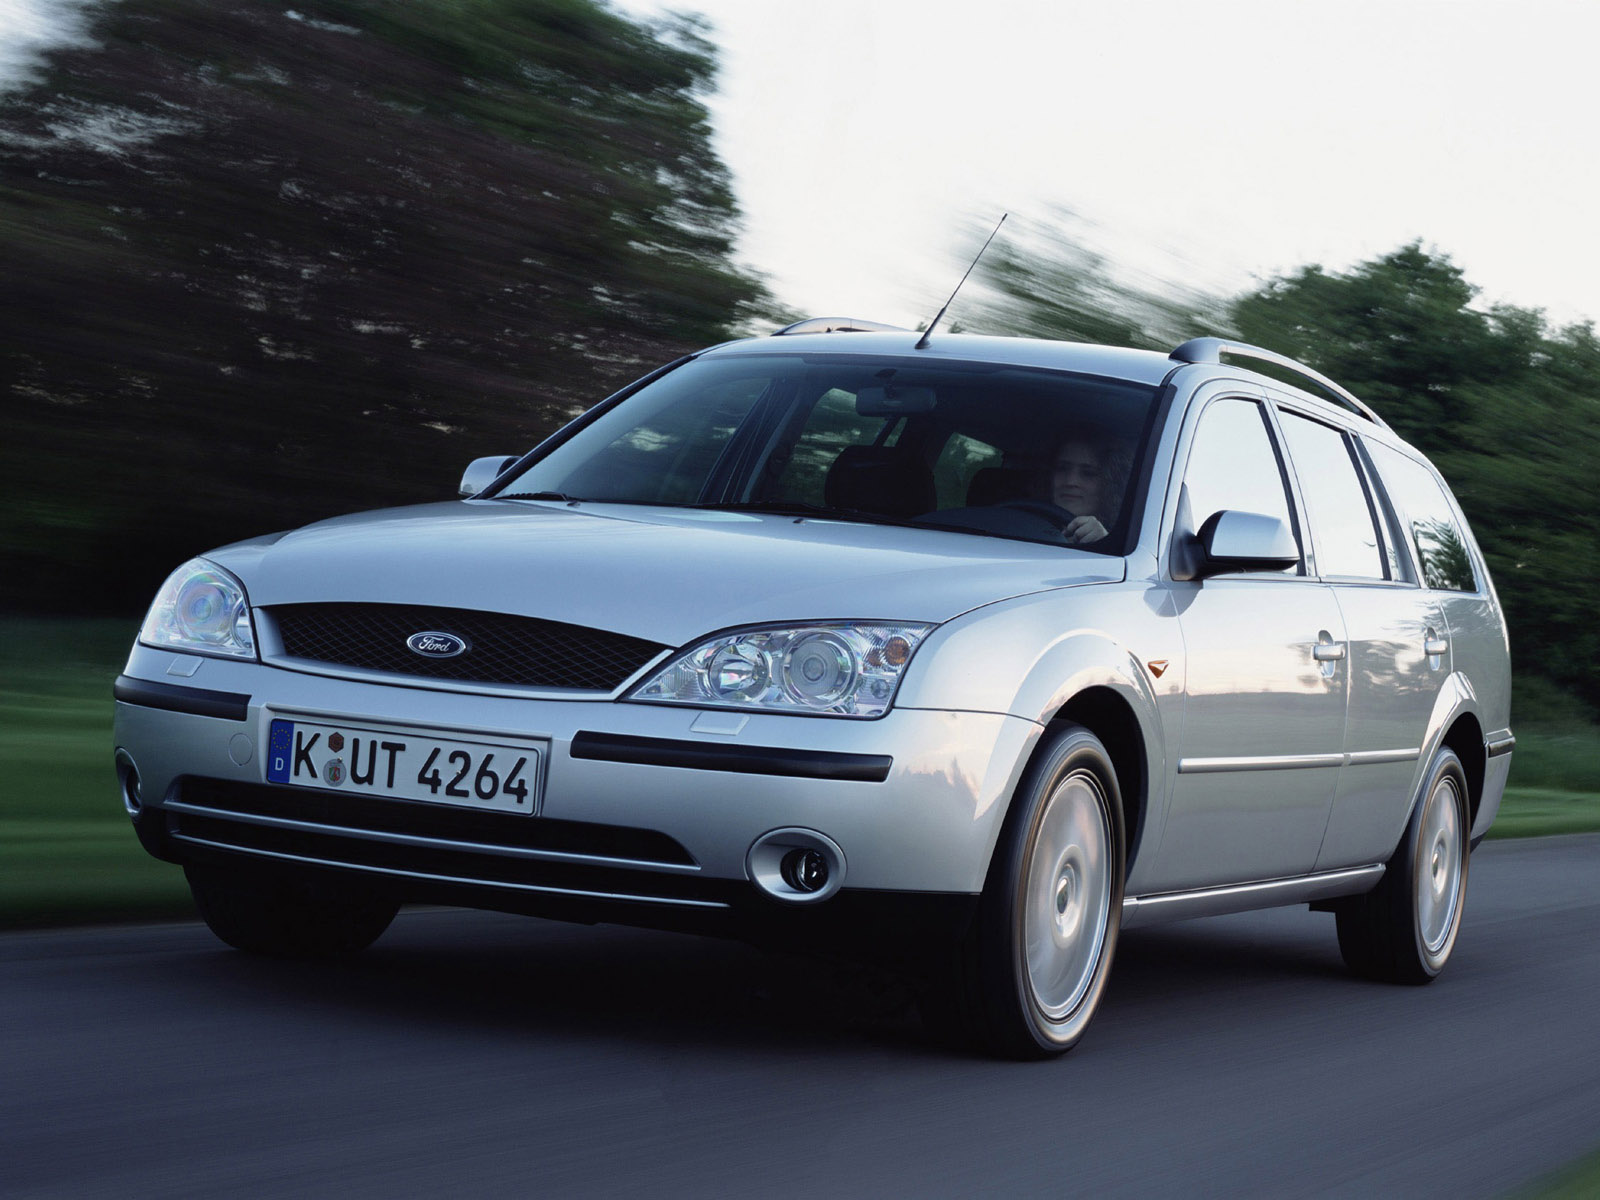 Coöperatie Veilig gemakkelijk te kwetsen Ford Mondeo 2004: Review, Amazing Pictures and Images – Look at the car